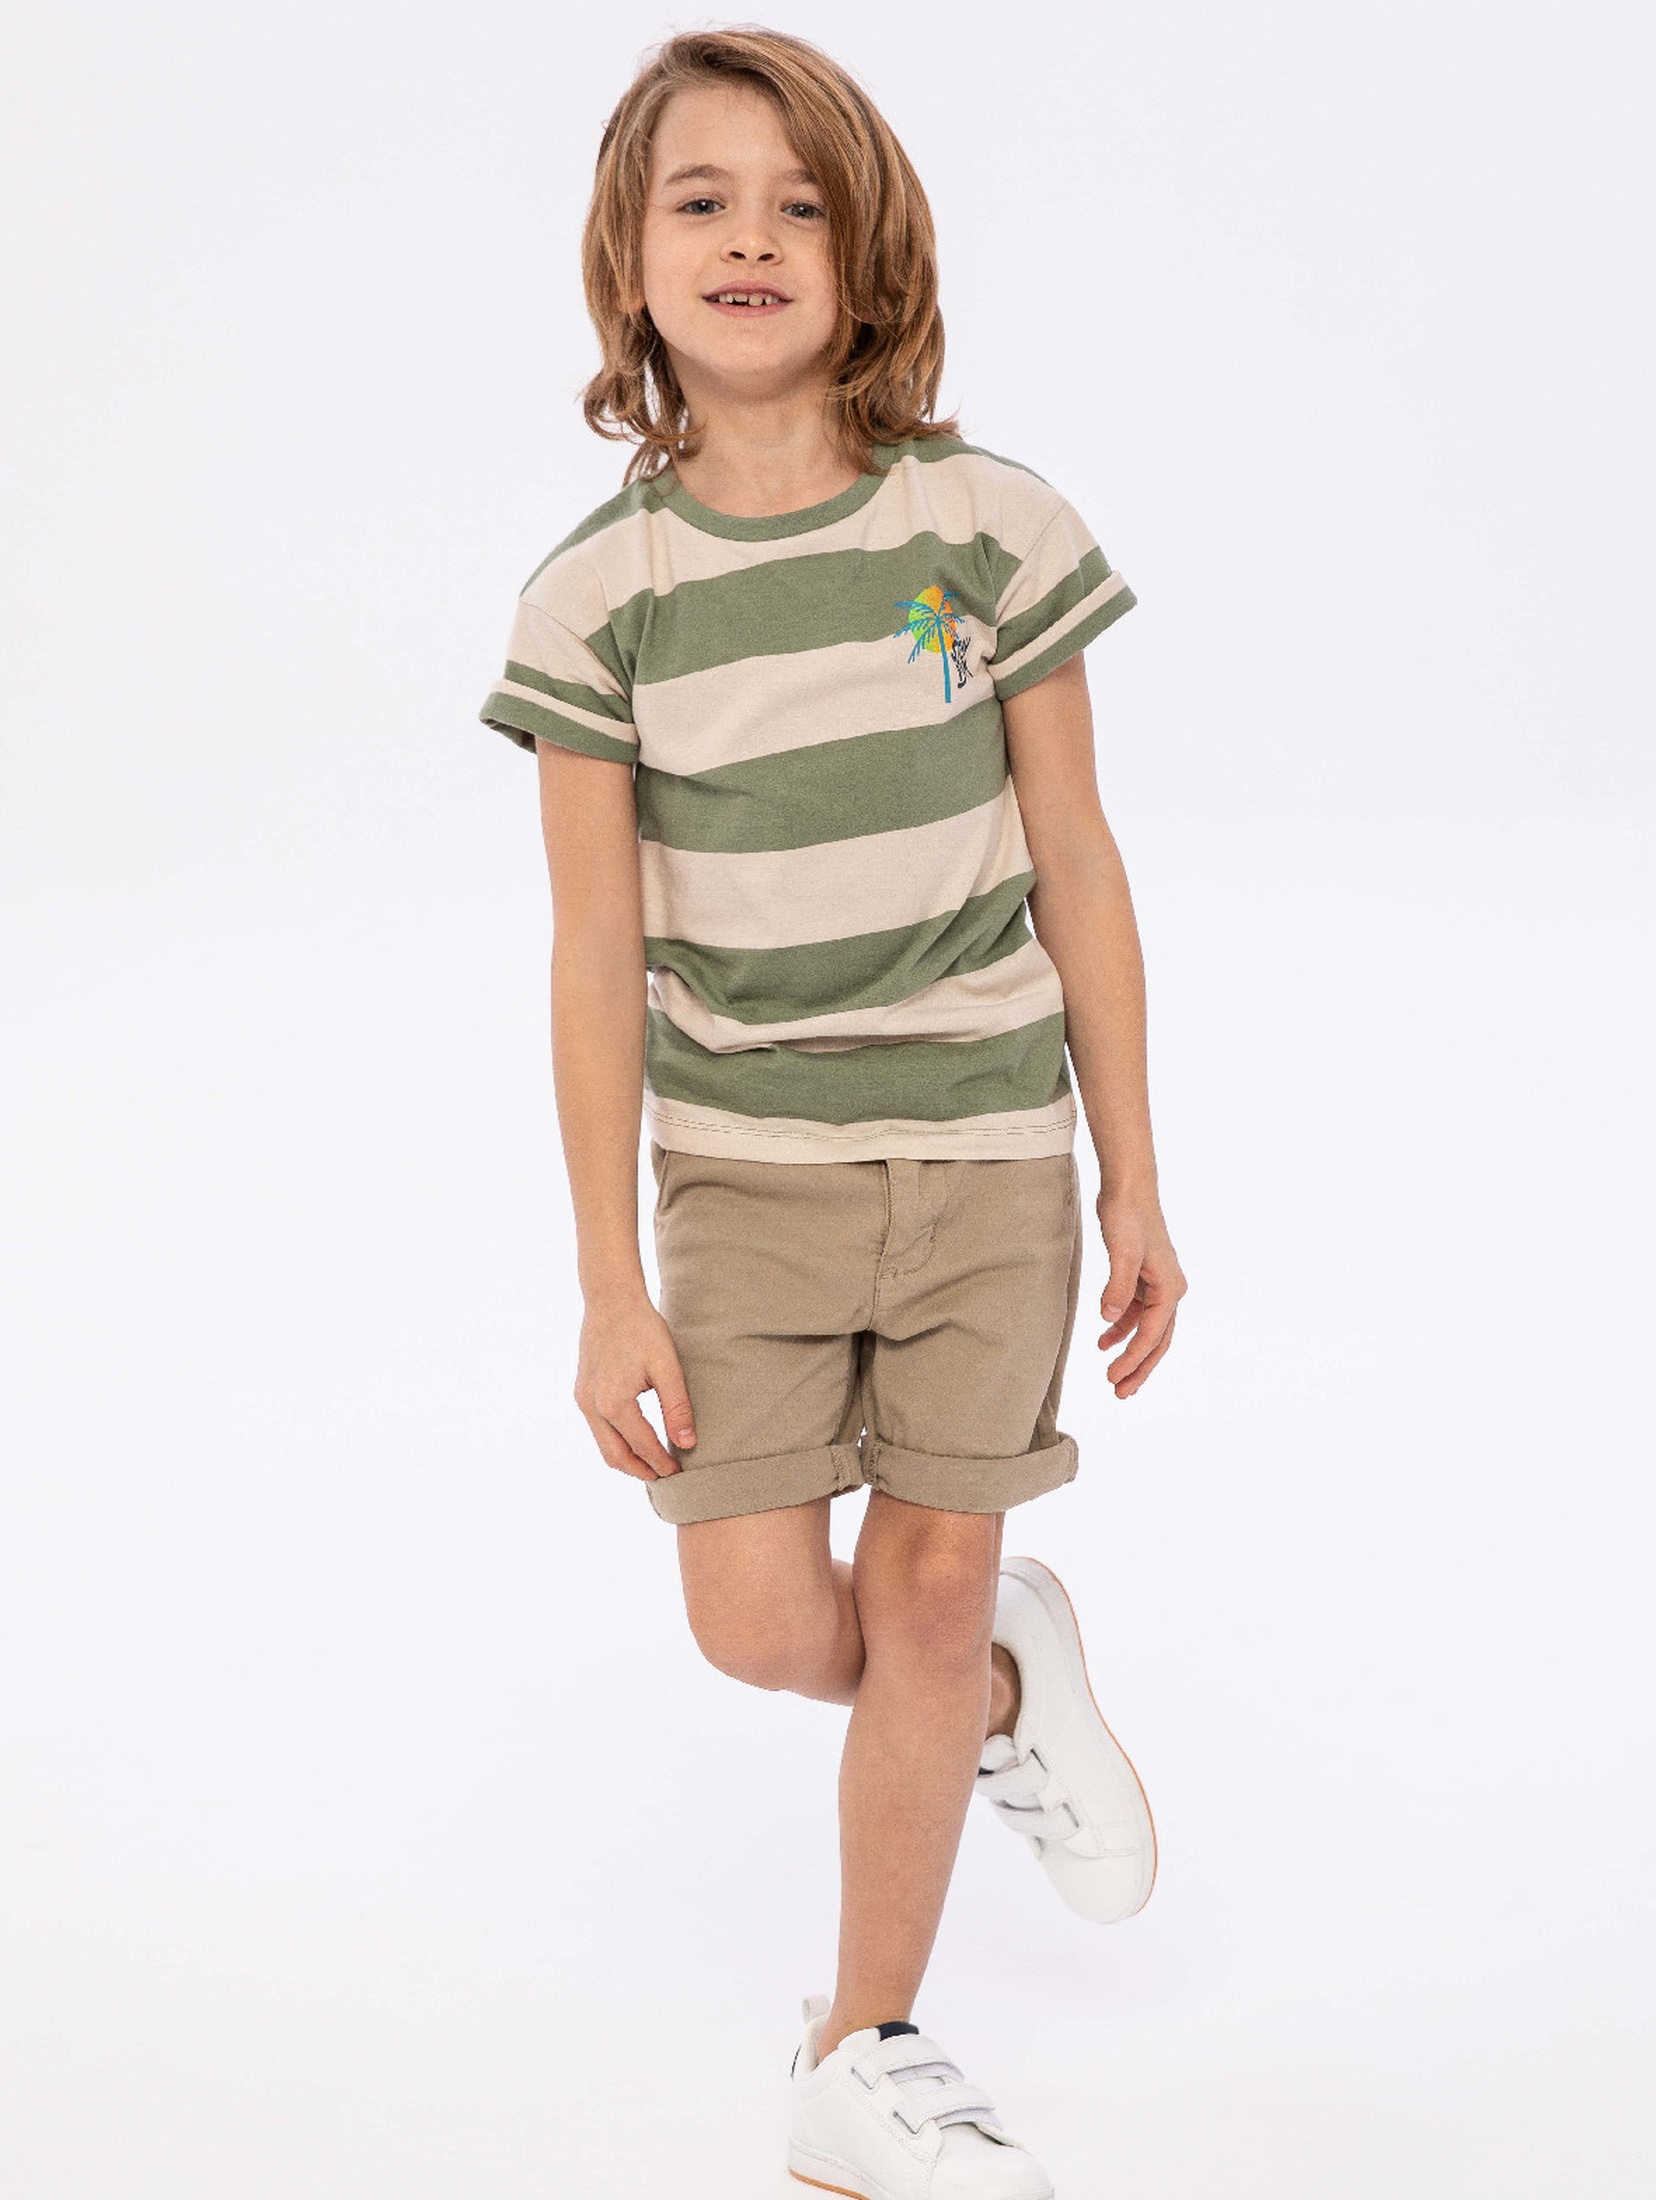 T-shirt dla chłopca bawełniany w paski